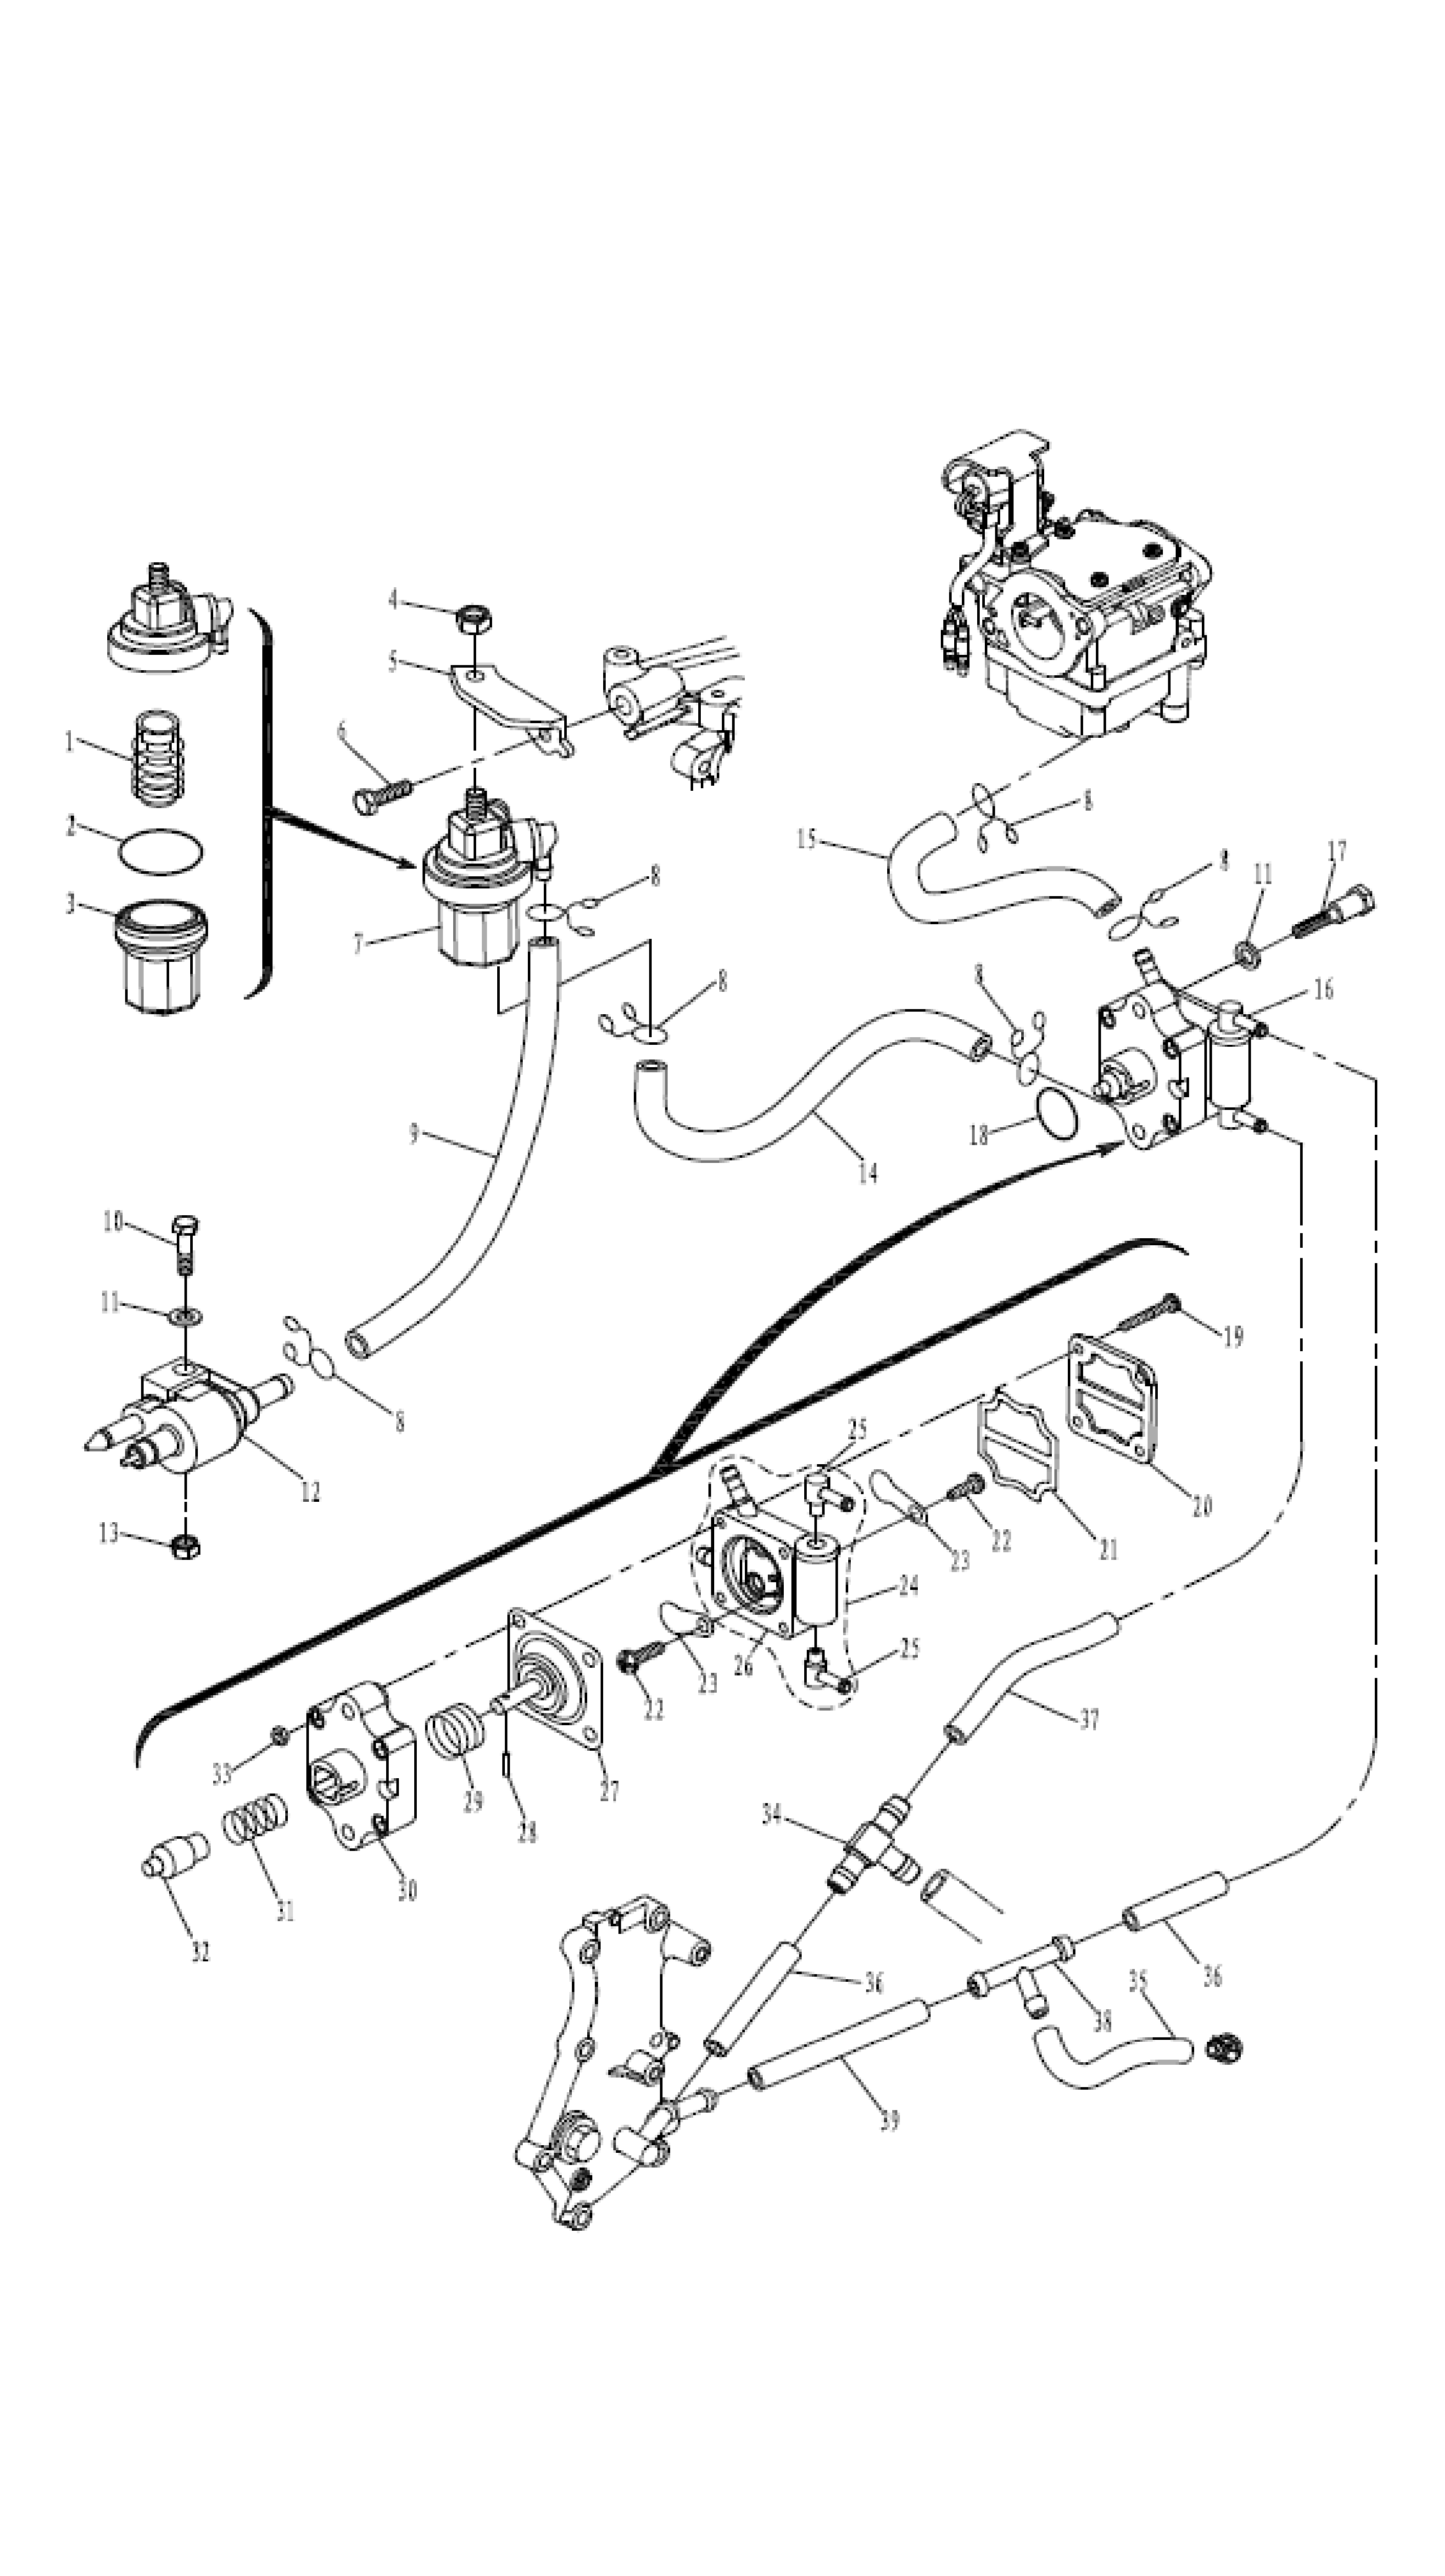 Топливная система - Fuel system